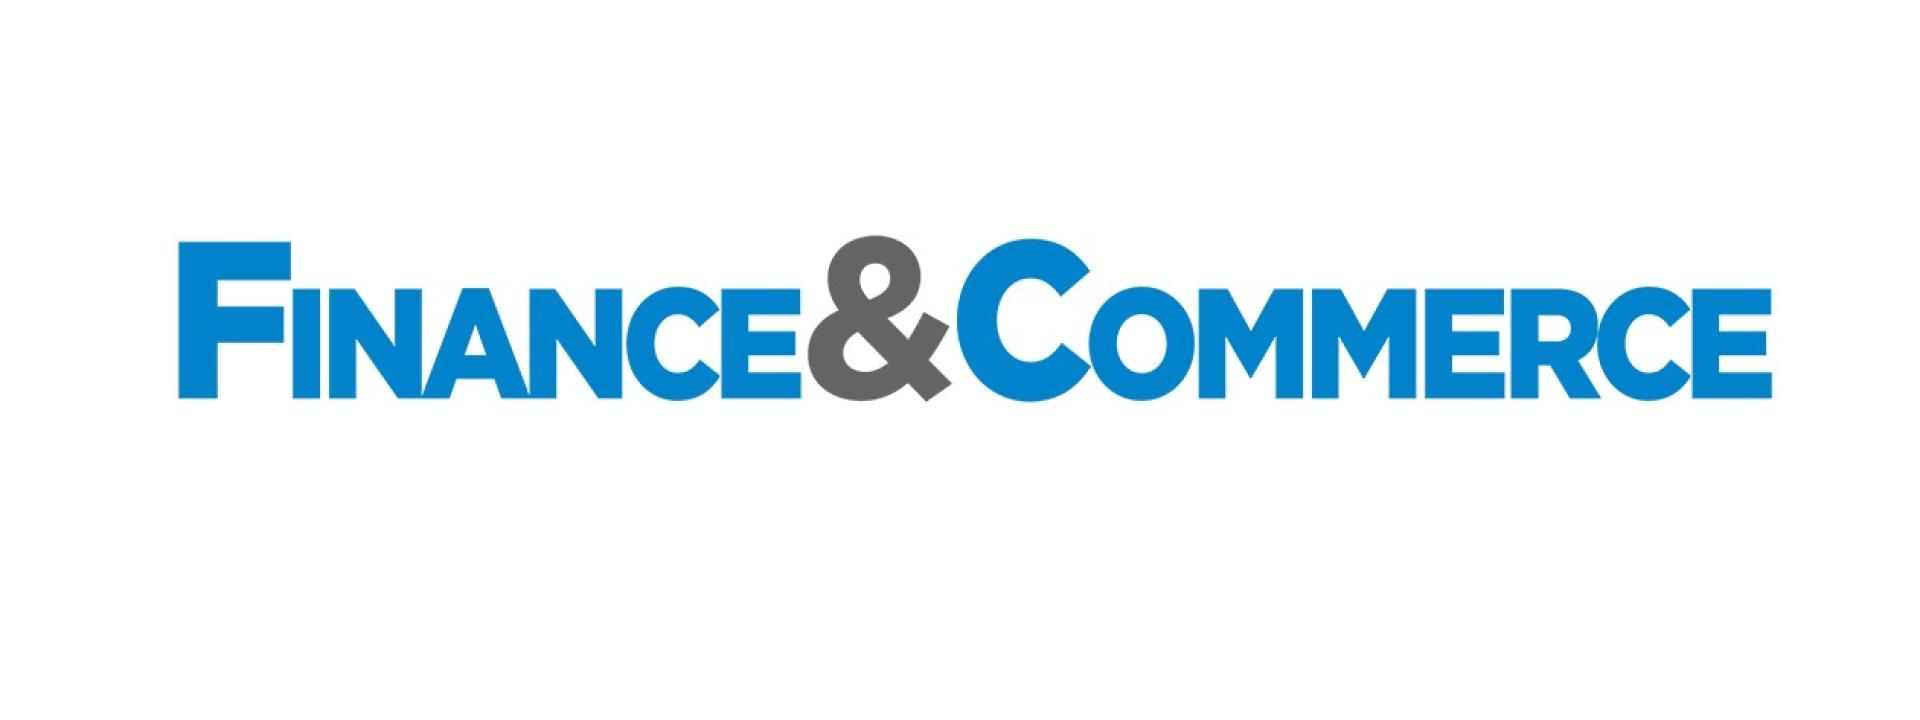 Finance & Commerce Logo